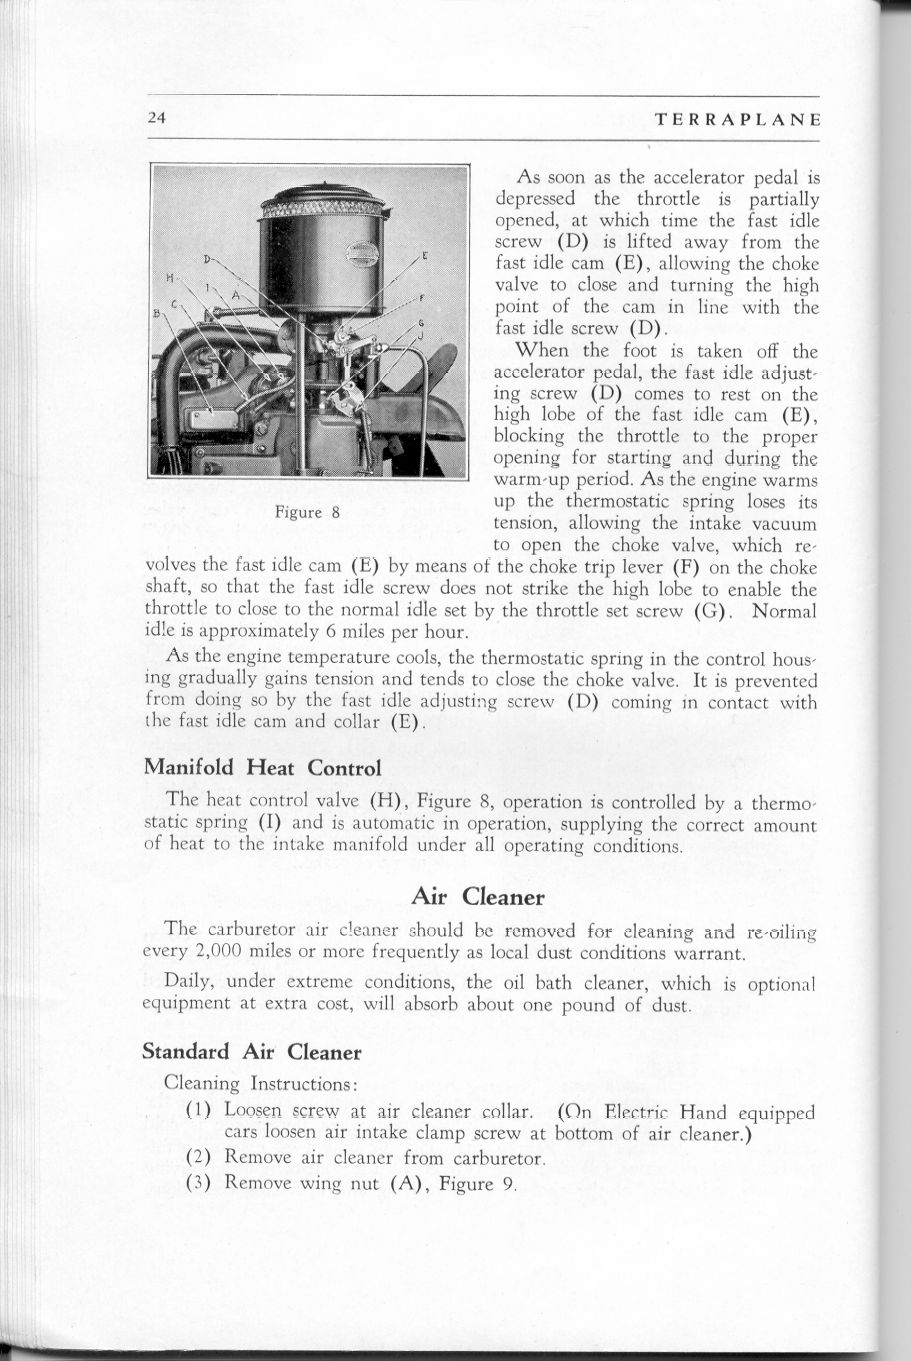 1937 Terraplane Owners Manual-24